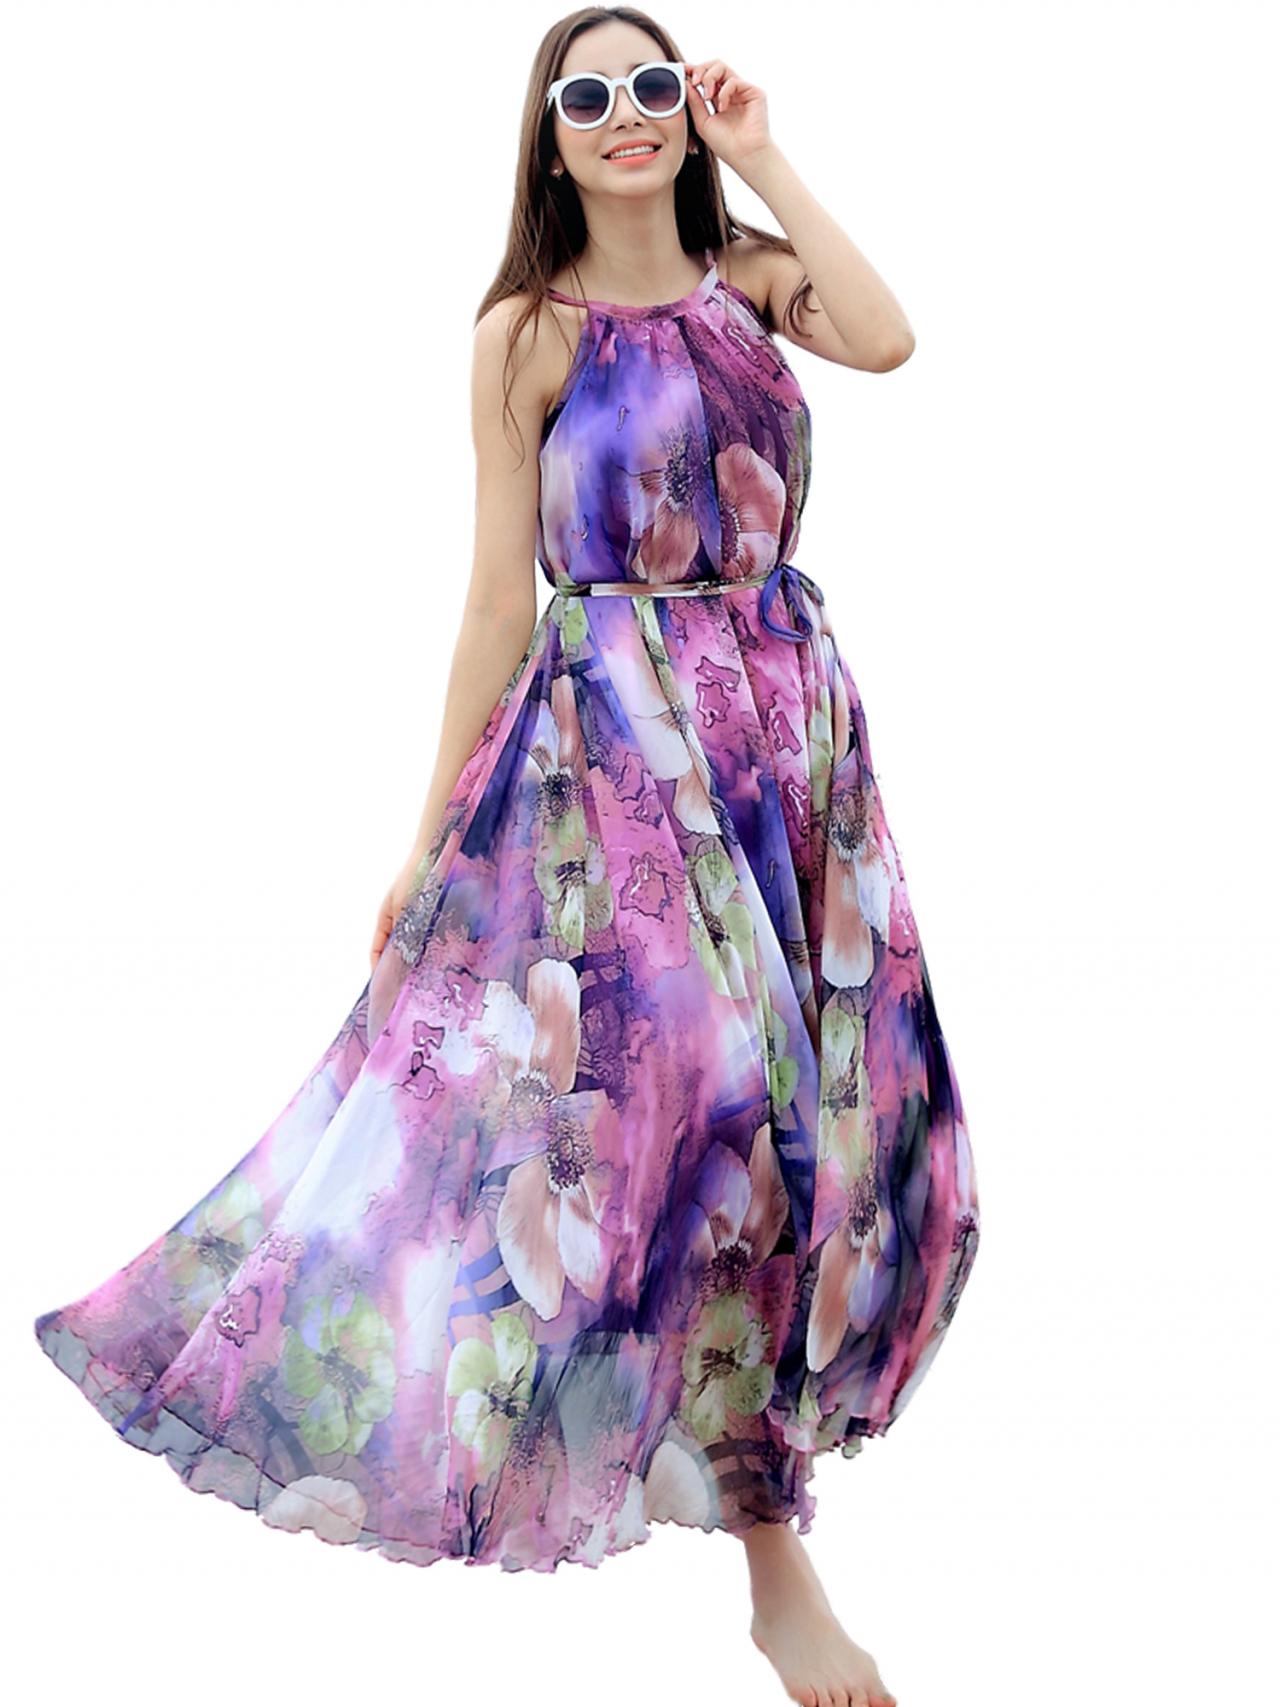 Purple Floral Long Beach Maxi Dress Lightweight Sundress Plus Size Summer Dress Holiday Beach Dress Bridesmaid Dress Long Prom Dress